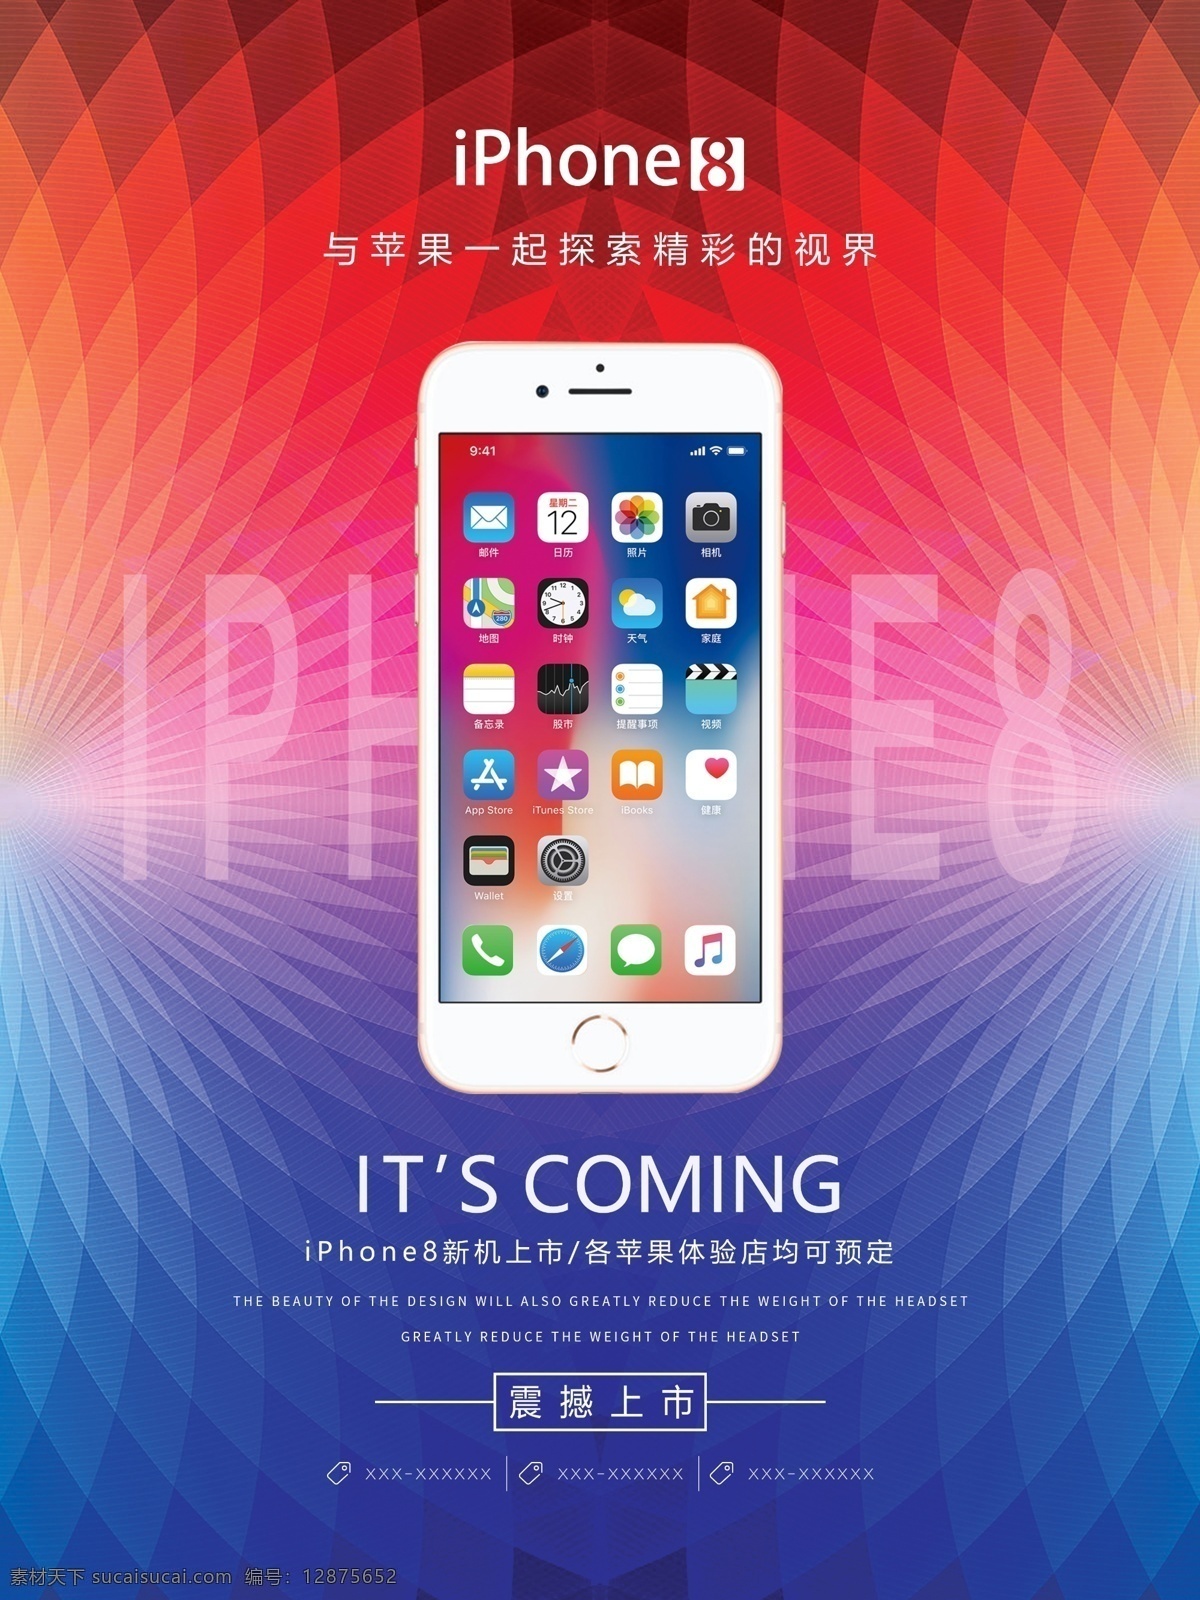 时尚 炫彩 iphone8 手机 促销 海报 简约 手机店 手机卖场 电子产品 苹果 iphone 苹果体验店 美在智慧 全面屏 宣传